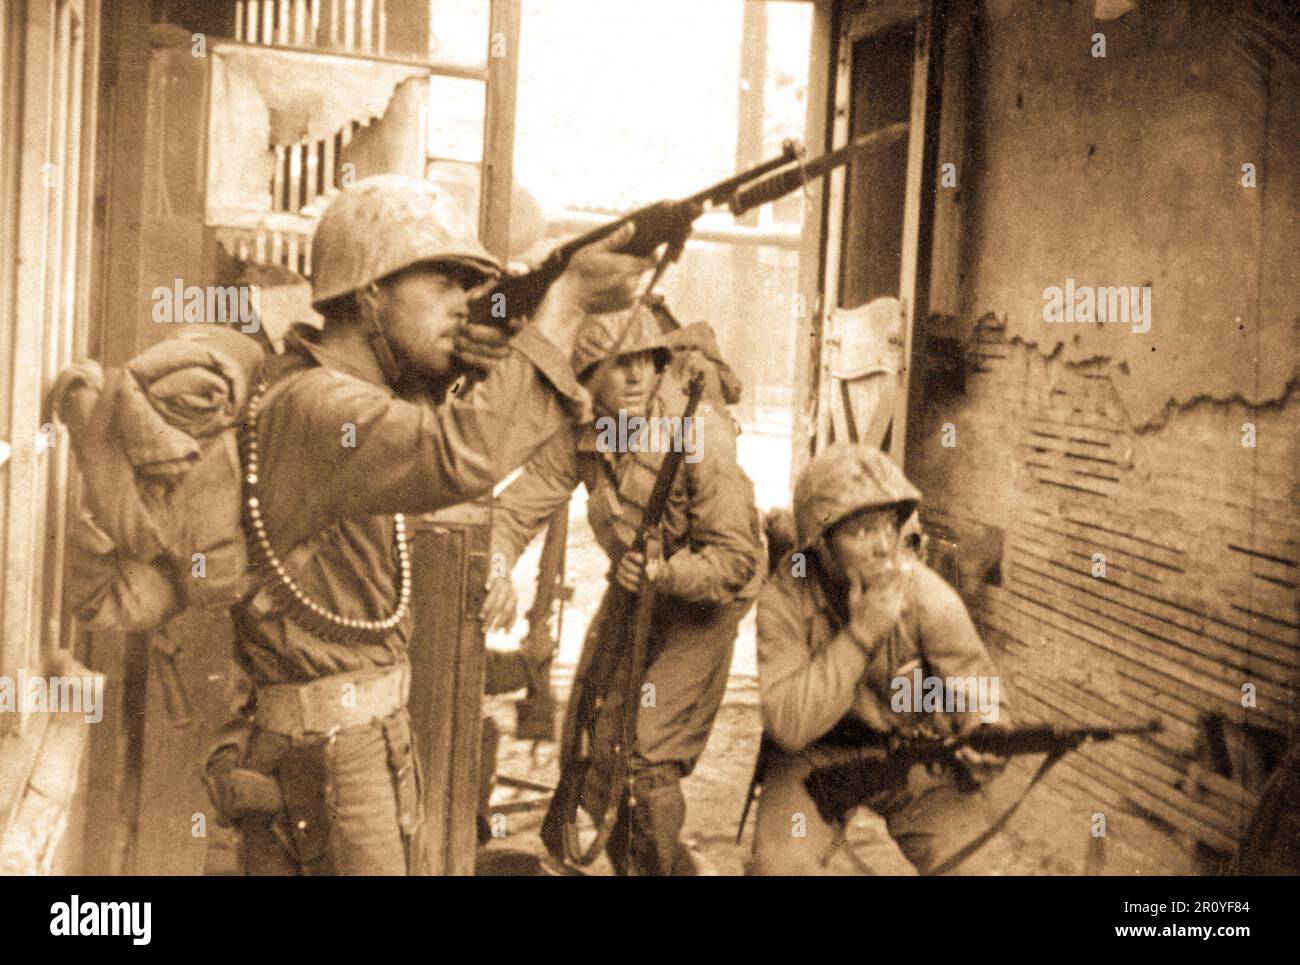 UN-Truppen kämpfen in den Straßen von Seoul, Korea.  20. September 1950. Foto von Lt. Robert L. Strickland und CPL John Romanowski. (Armee) Stockfoto